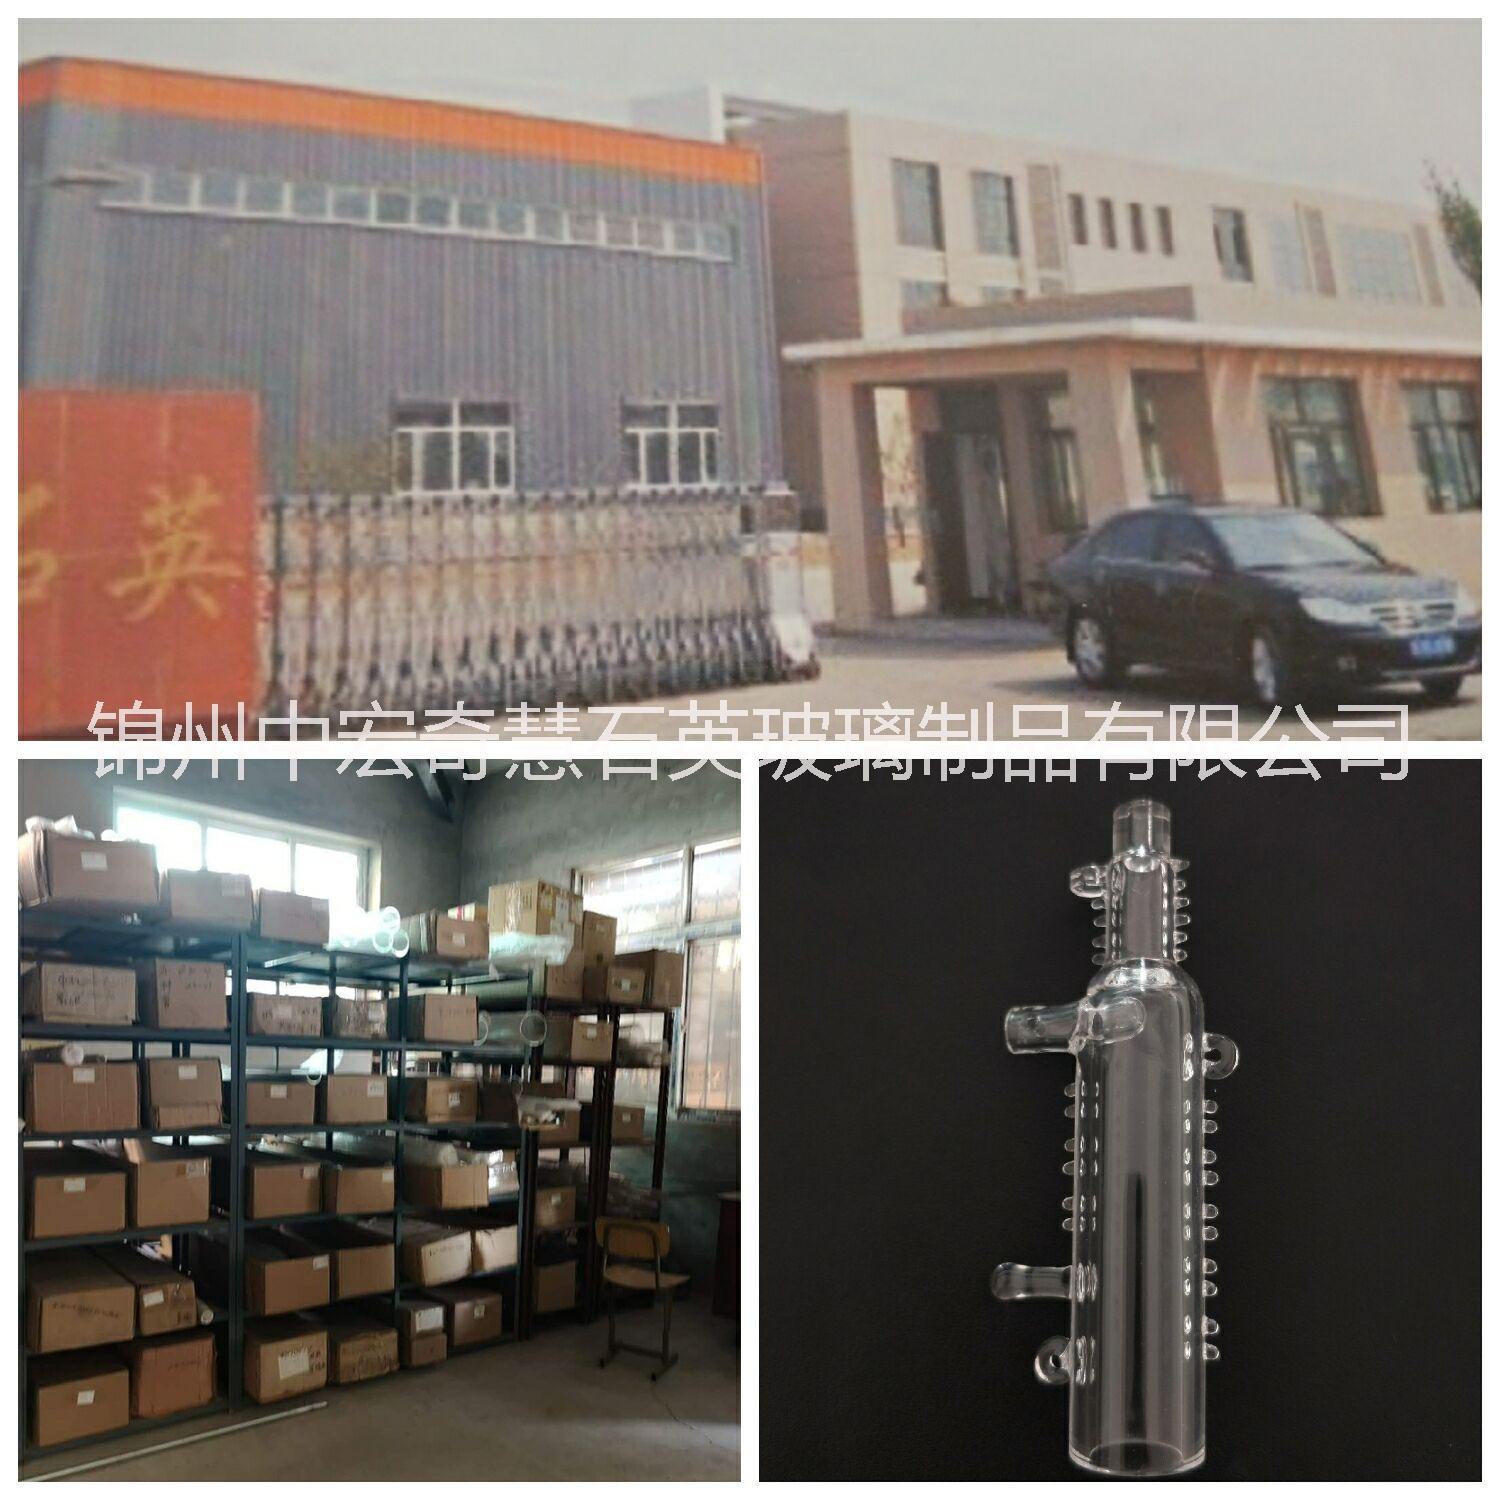 锦州中宏奇慧石英玻璃制品有限公司